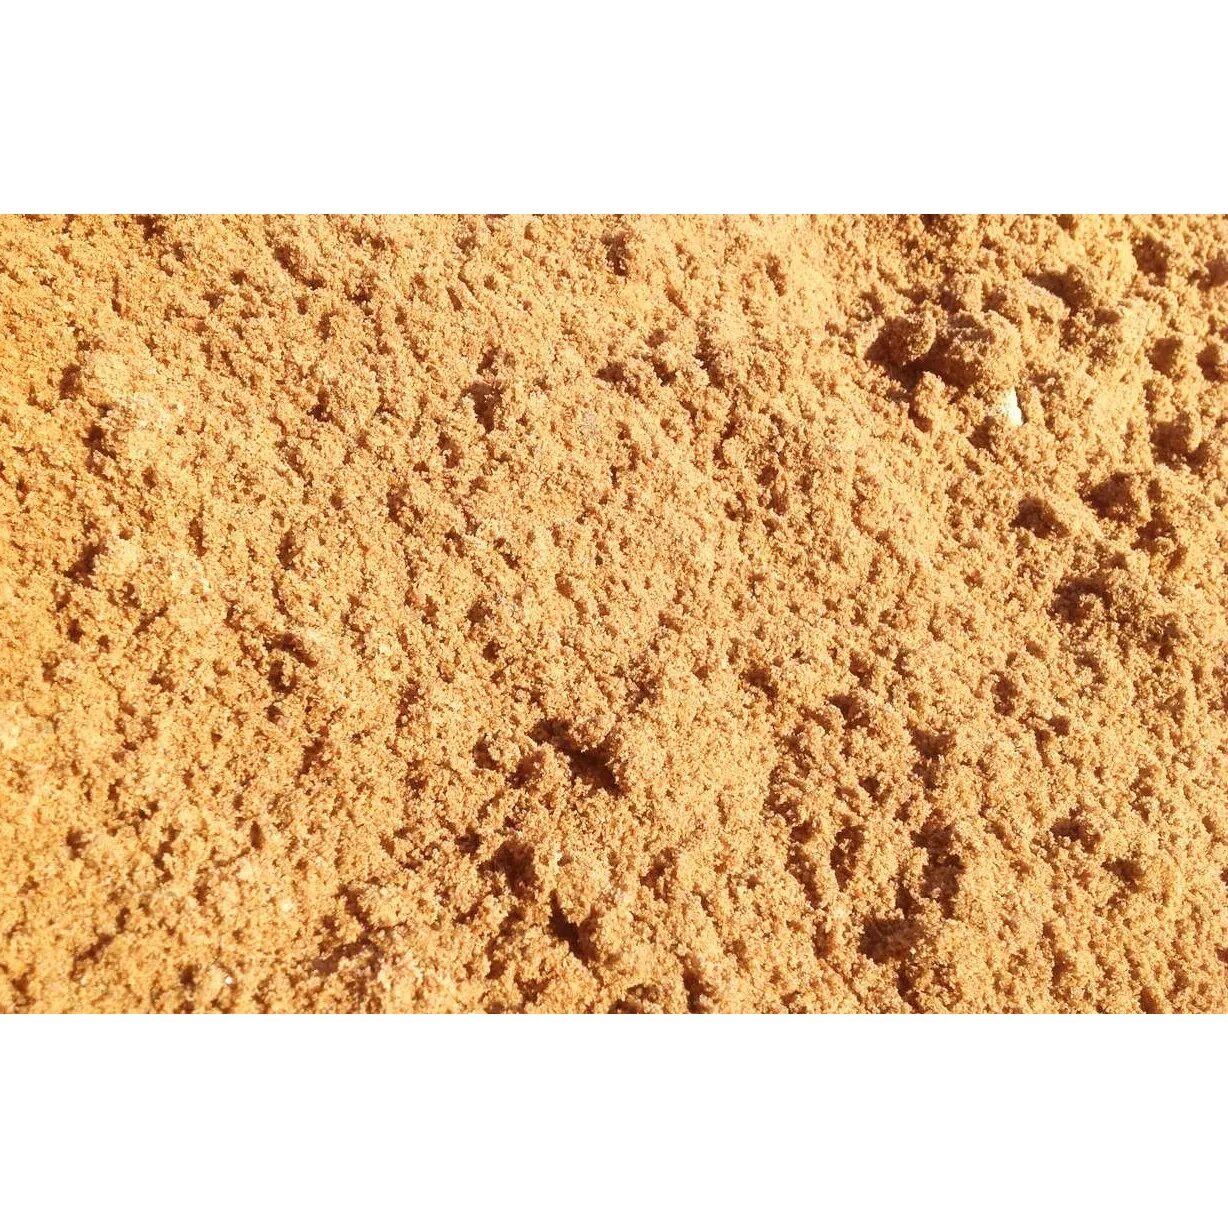 Доставка карьерного песка спб. Песок Речной 20-23кг. Песок строительный l 2-2.5 г8736. Горный песок. Песок желтый строительный.